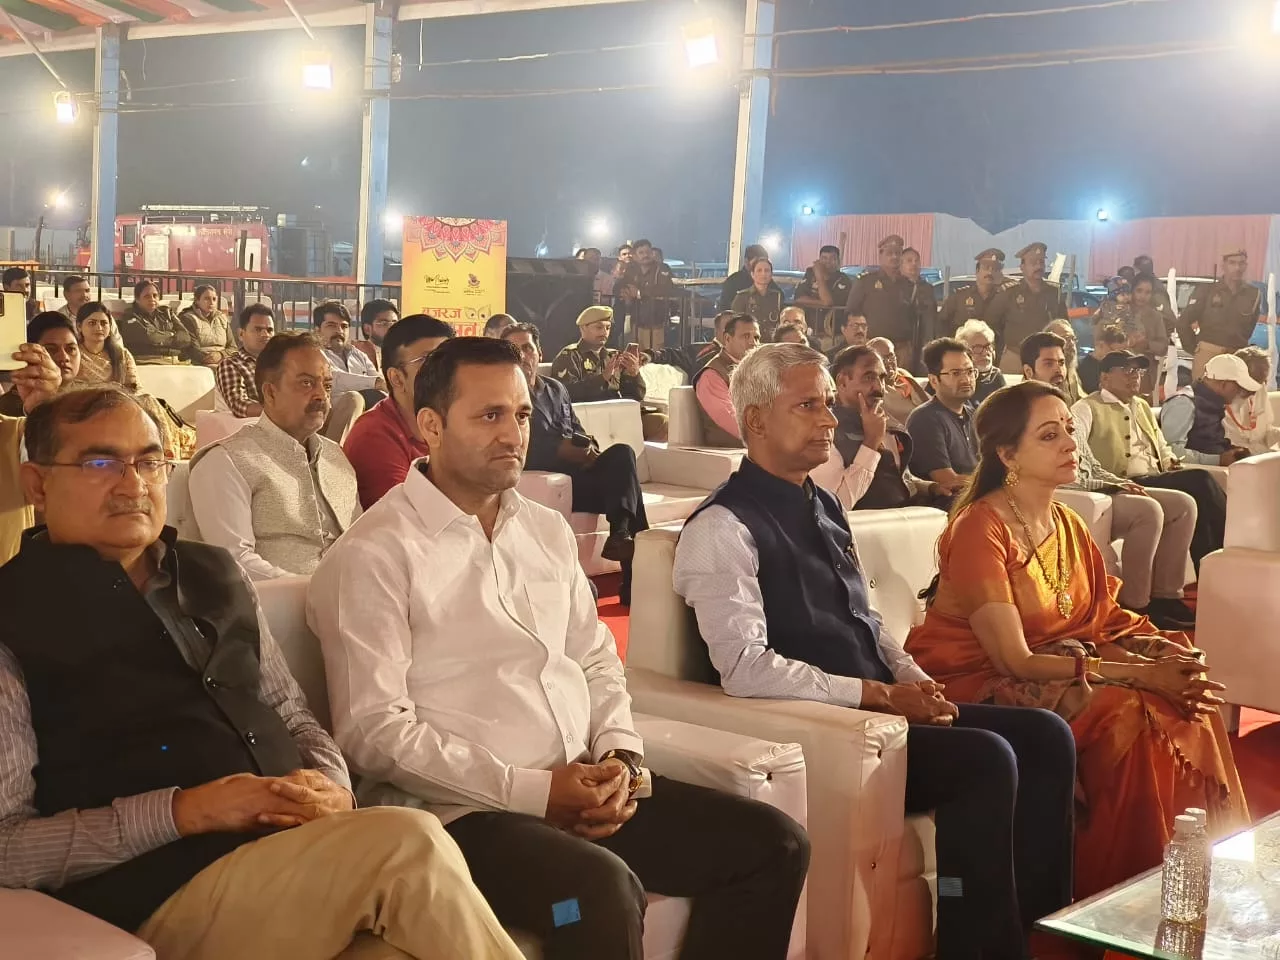 मथुरा में 14 दिवसीय ब्रज रज उत्सव का सांसद हेमा मालिनी, प्रदेश के गन्ना मंत्री लक्ष्मीनारायण चौधरी, जिलाधिकारी शैलेंद्र कुमार सिंह की मौजूदगी में हुआ शुभारंभ | New India Times